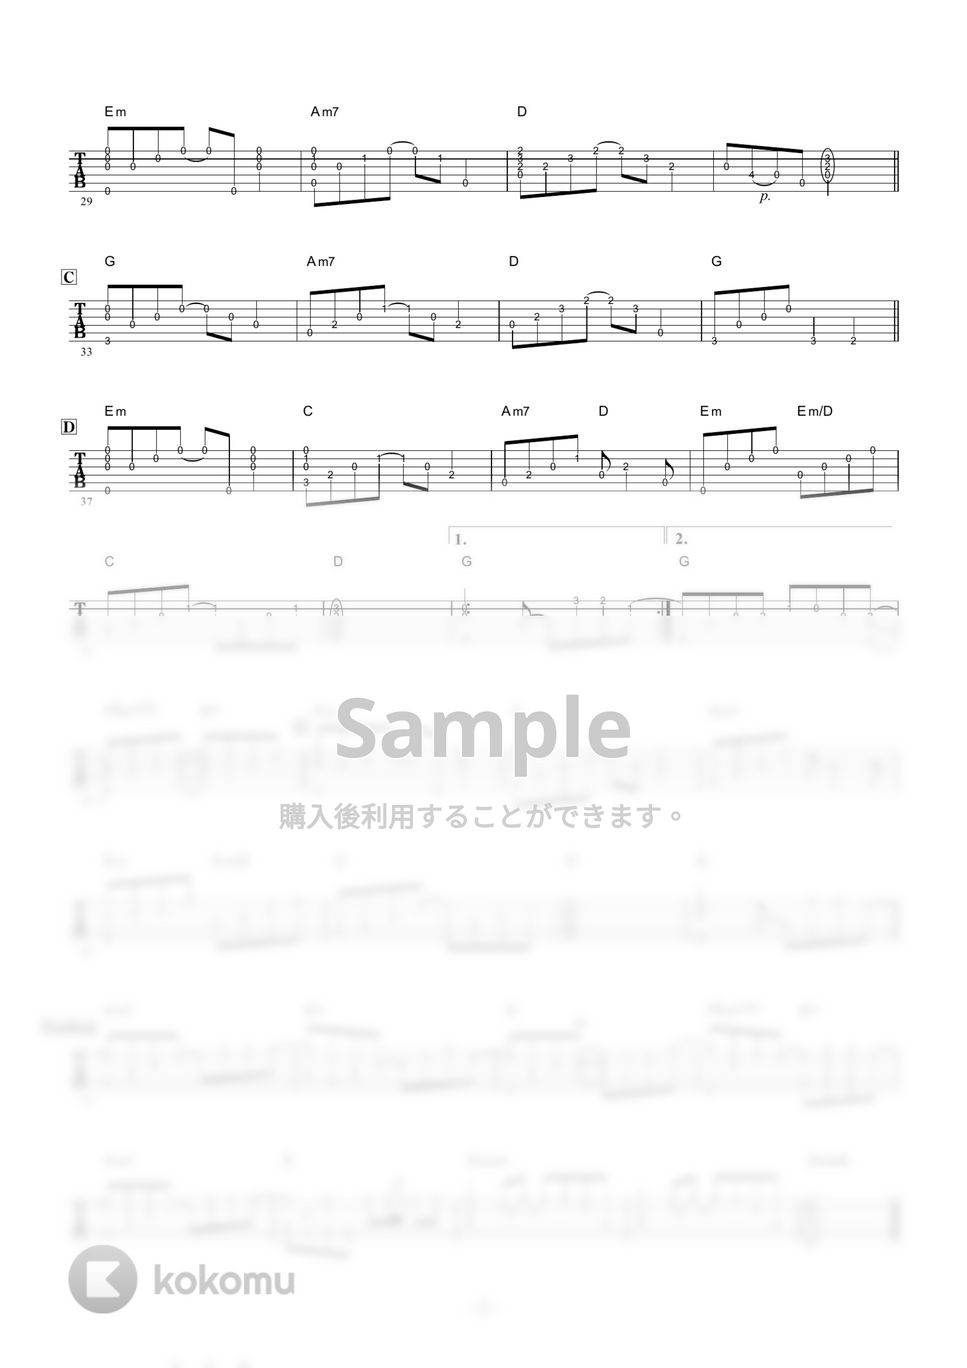 テレサテン - 別れの予感 (ギター伴奏/イントロ・間奏ソロギター) by 伴奏屋TAB譜